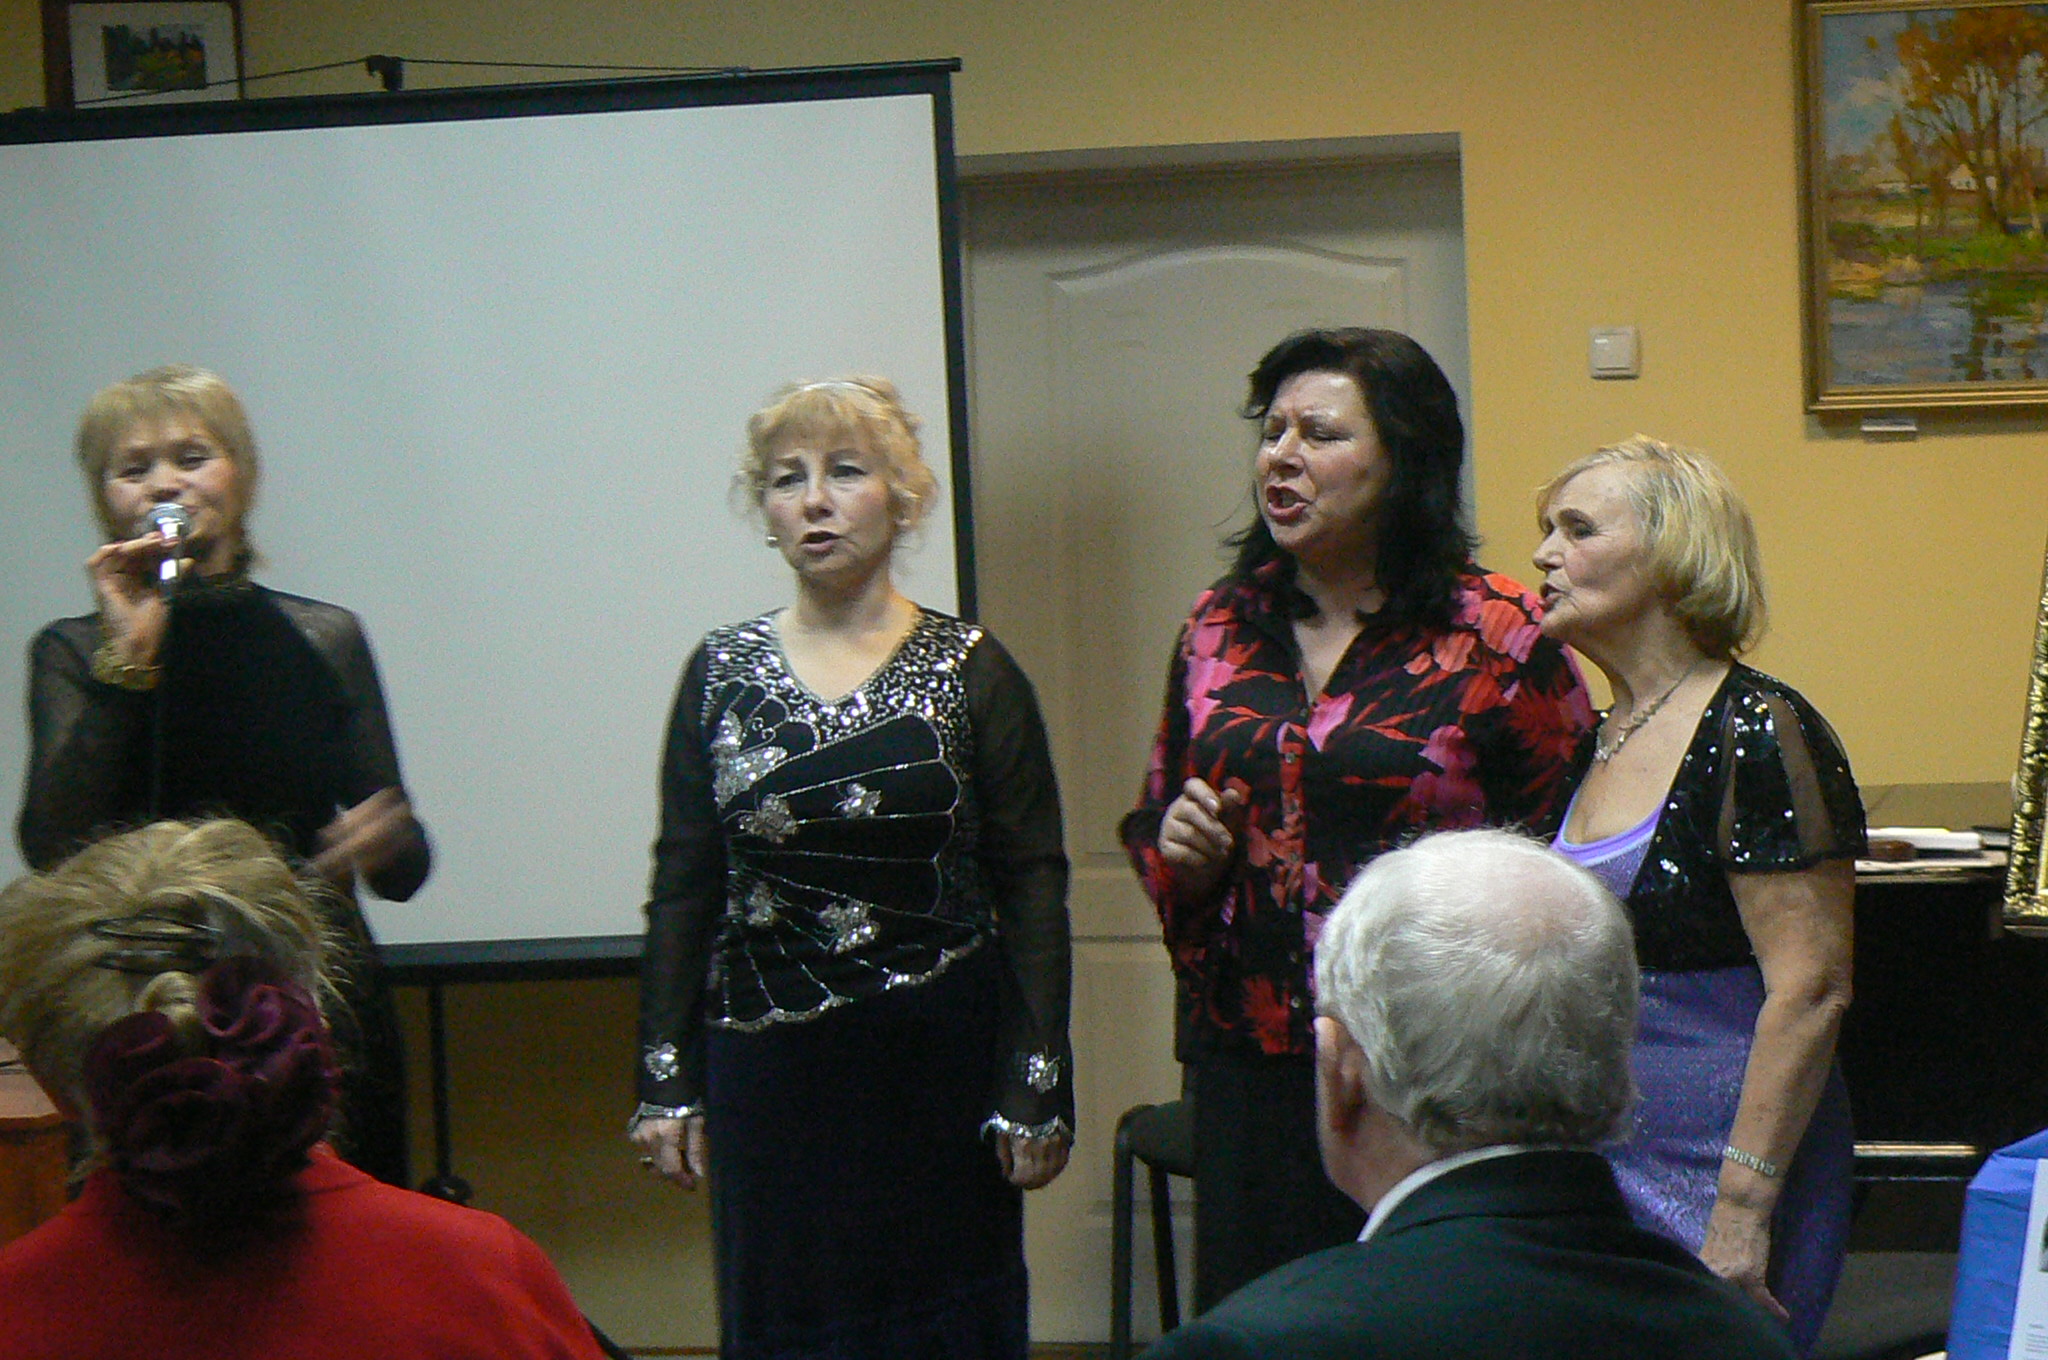 участники творческого объединения «Союз писателей «Сиверко» - литературная студия «Нива» исполняют песню «Команда молодости нашей».